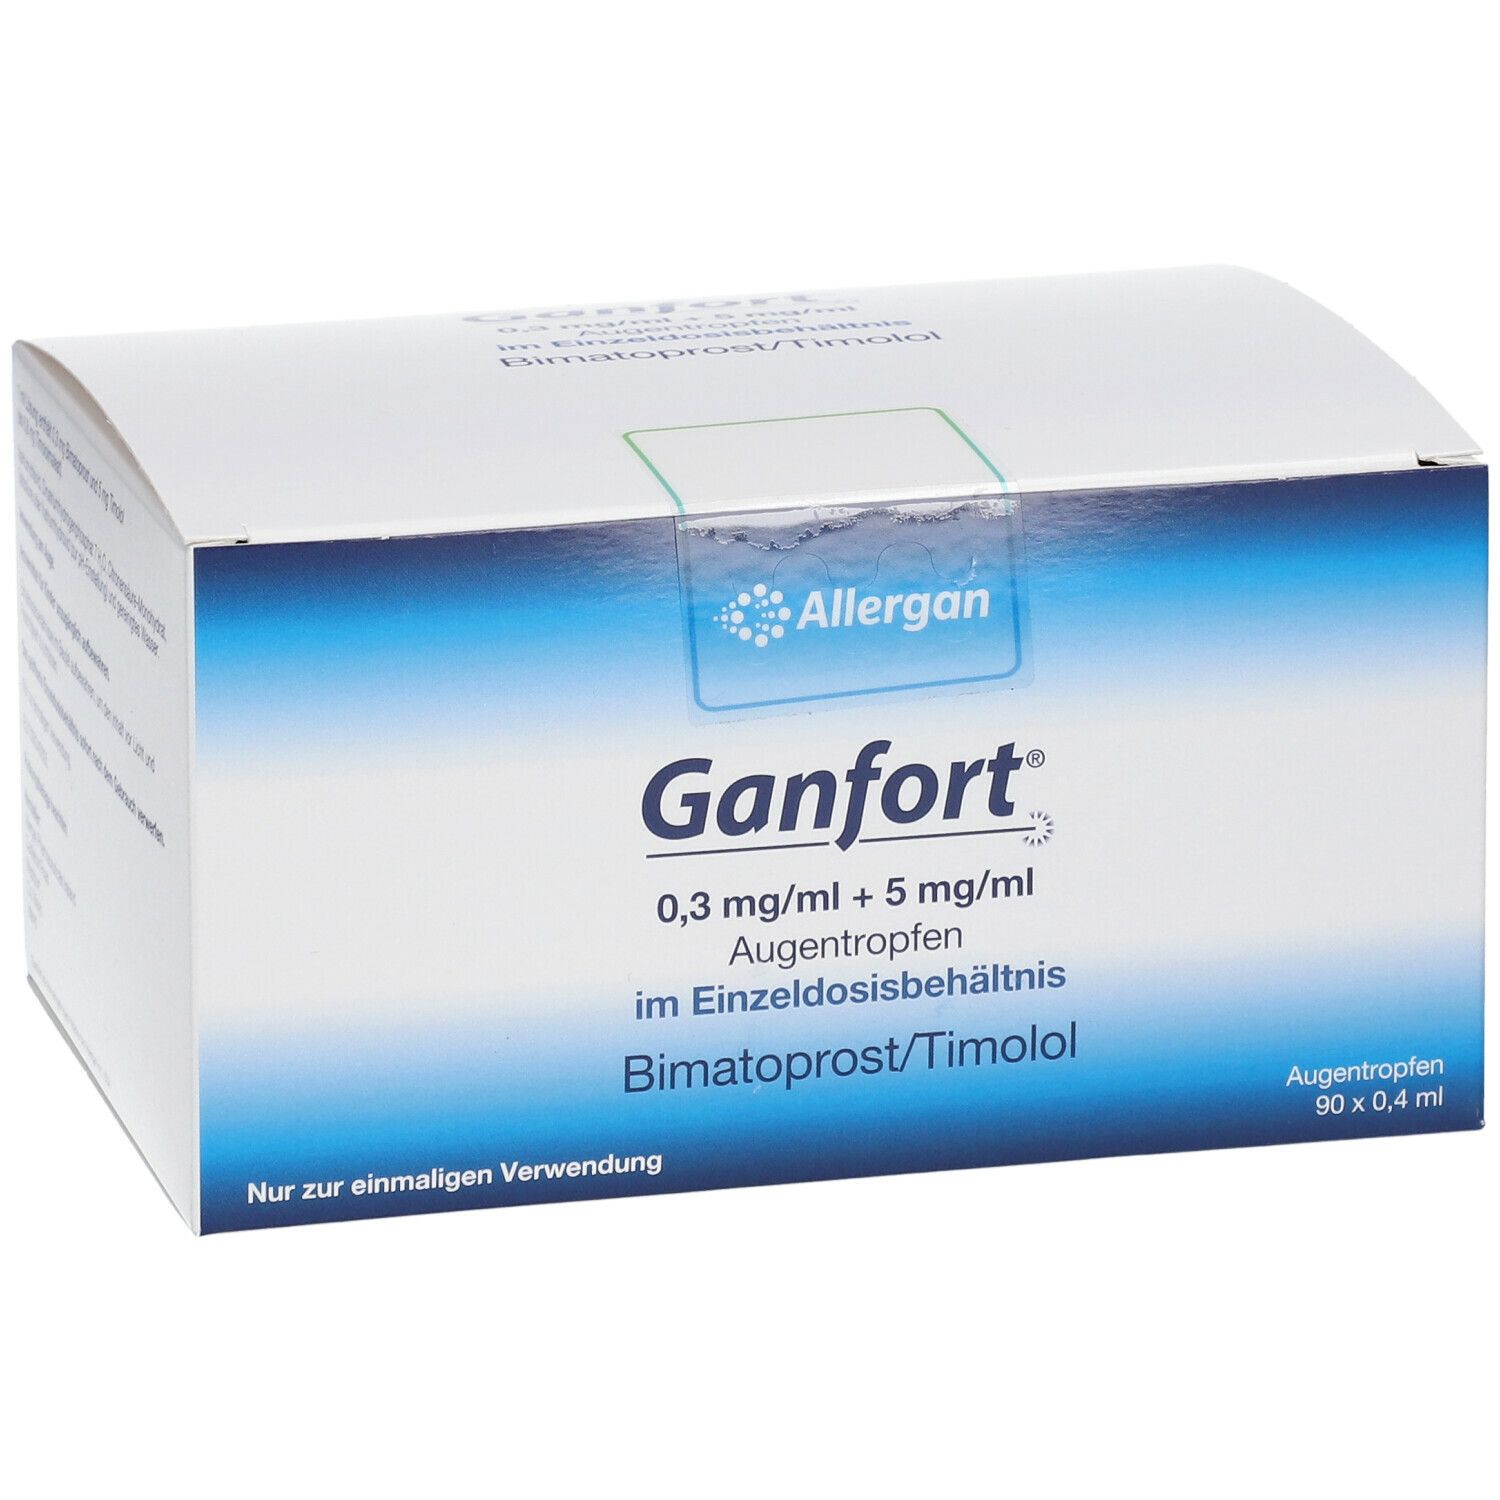 Ganfort 0,3 mg/ml + 5 mg/ml AT